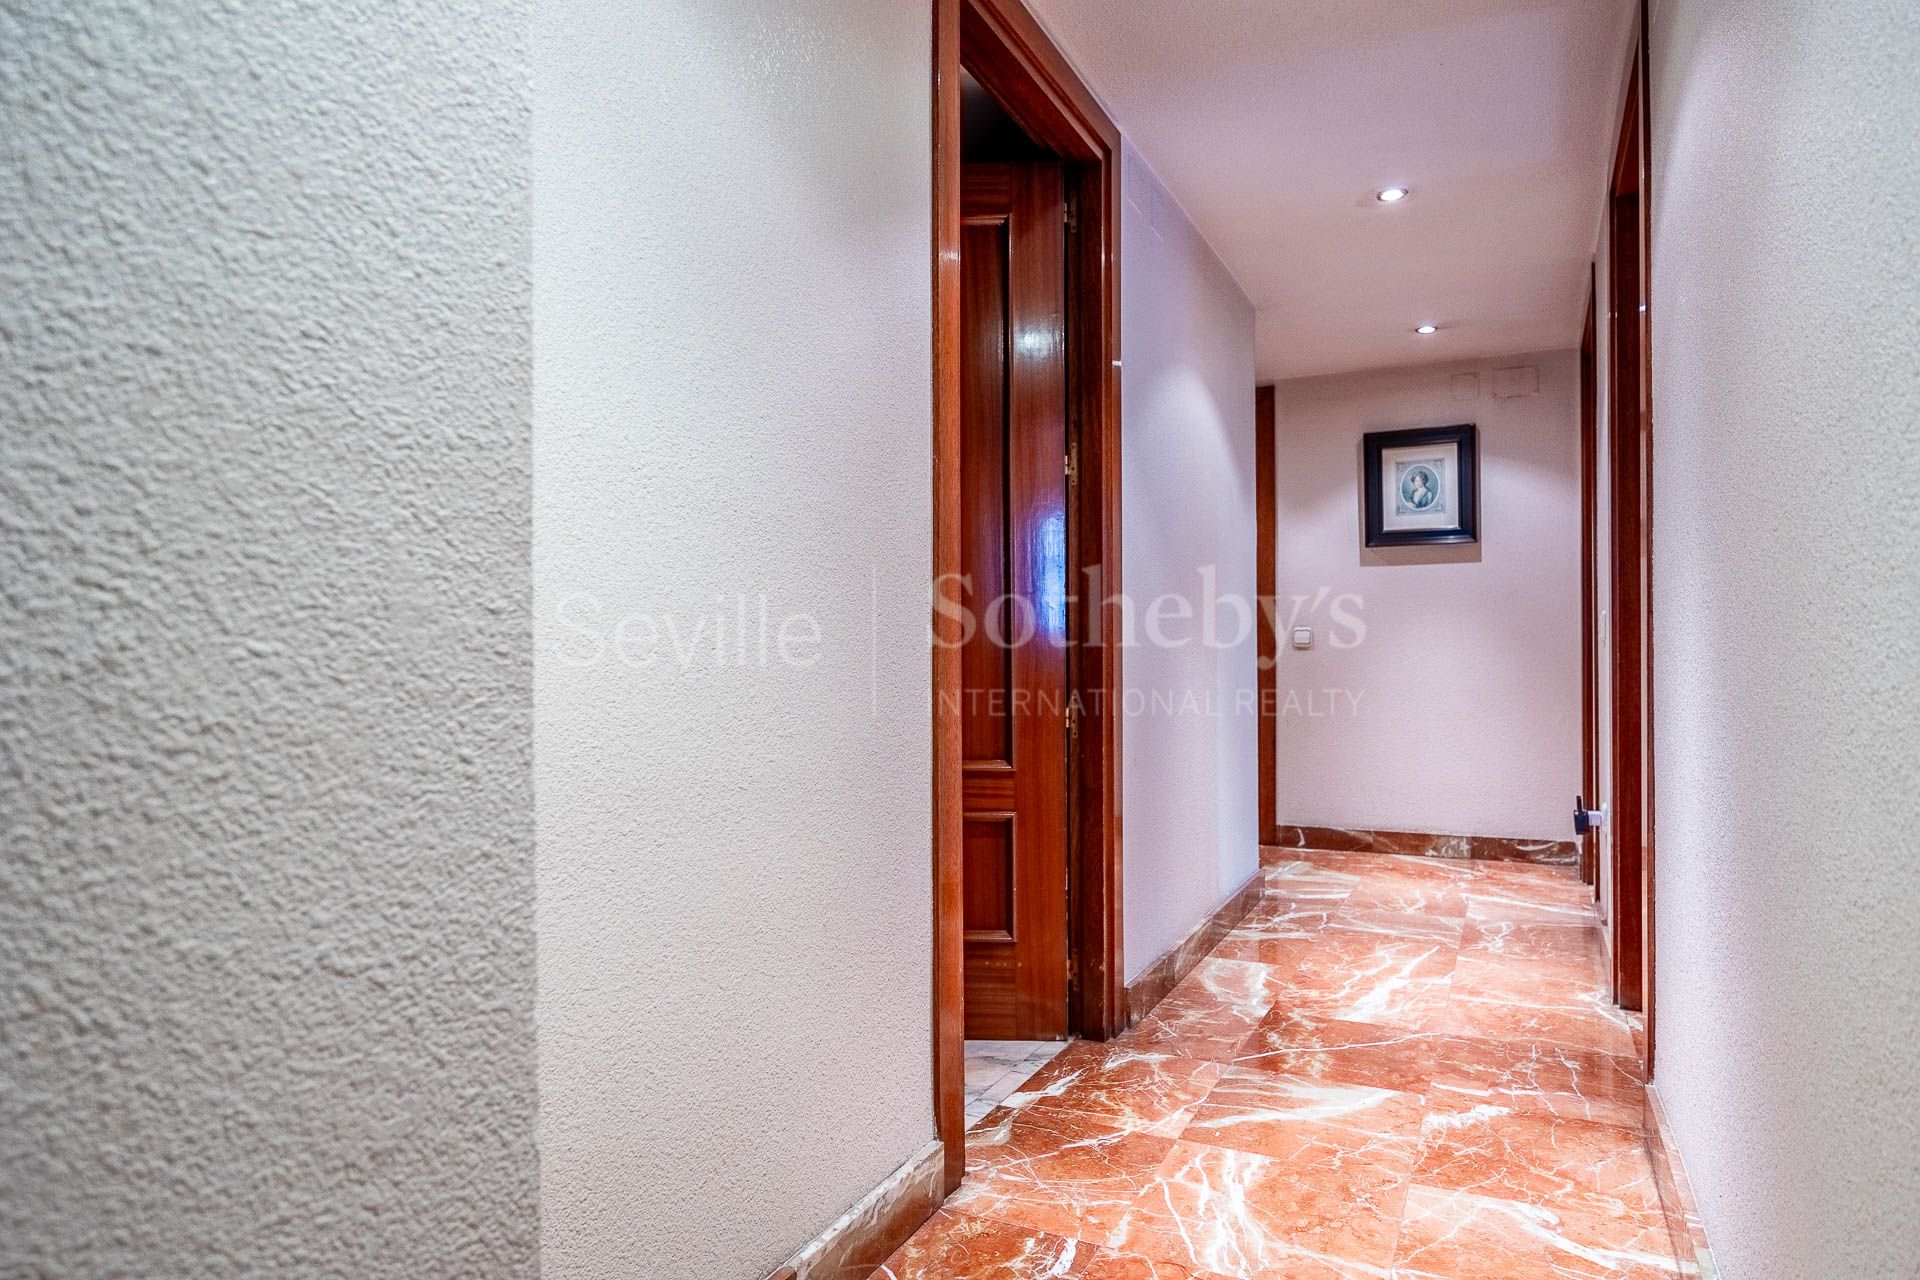 Piso de 5 dormitorios con garaje y trastero en pleno centro de Sevilla.